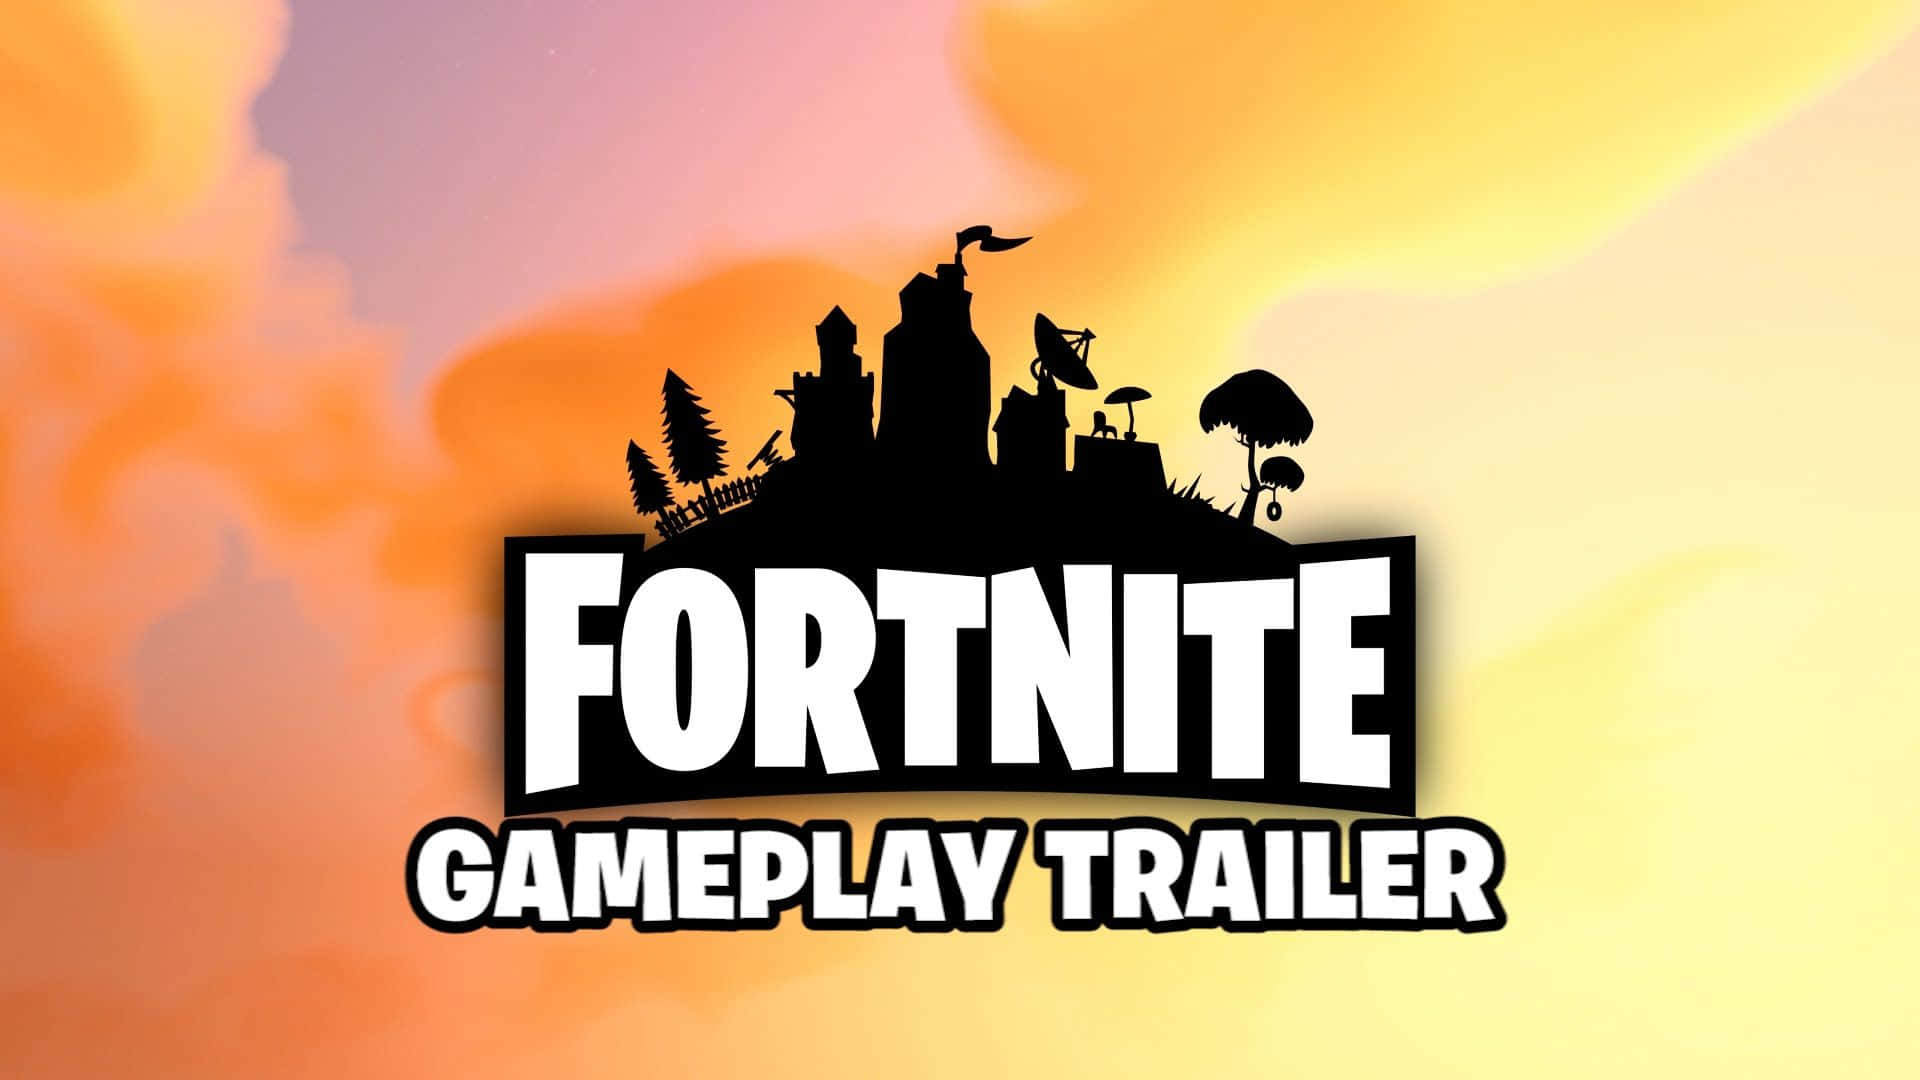 Fortnitegameplay-trailer - Ein Fortnite Gameplay-trailer Wallpaper